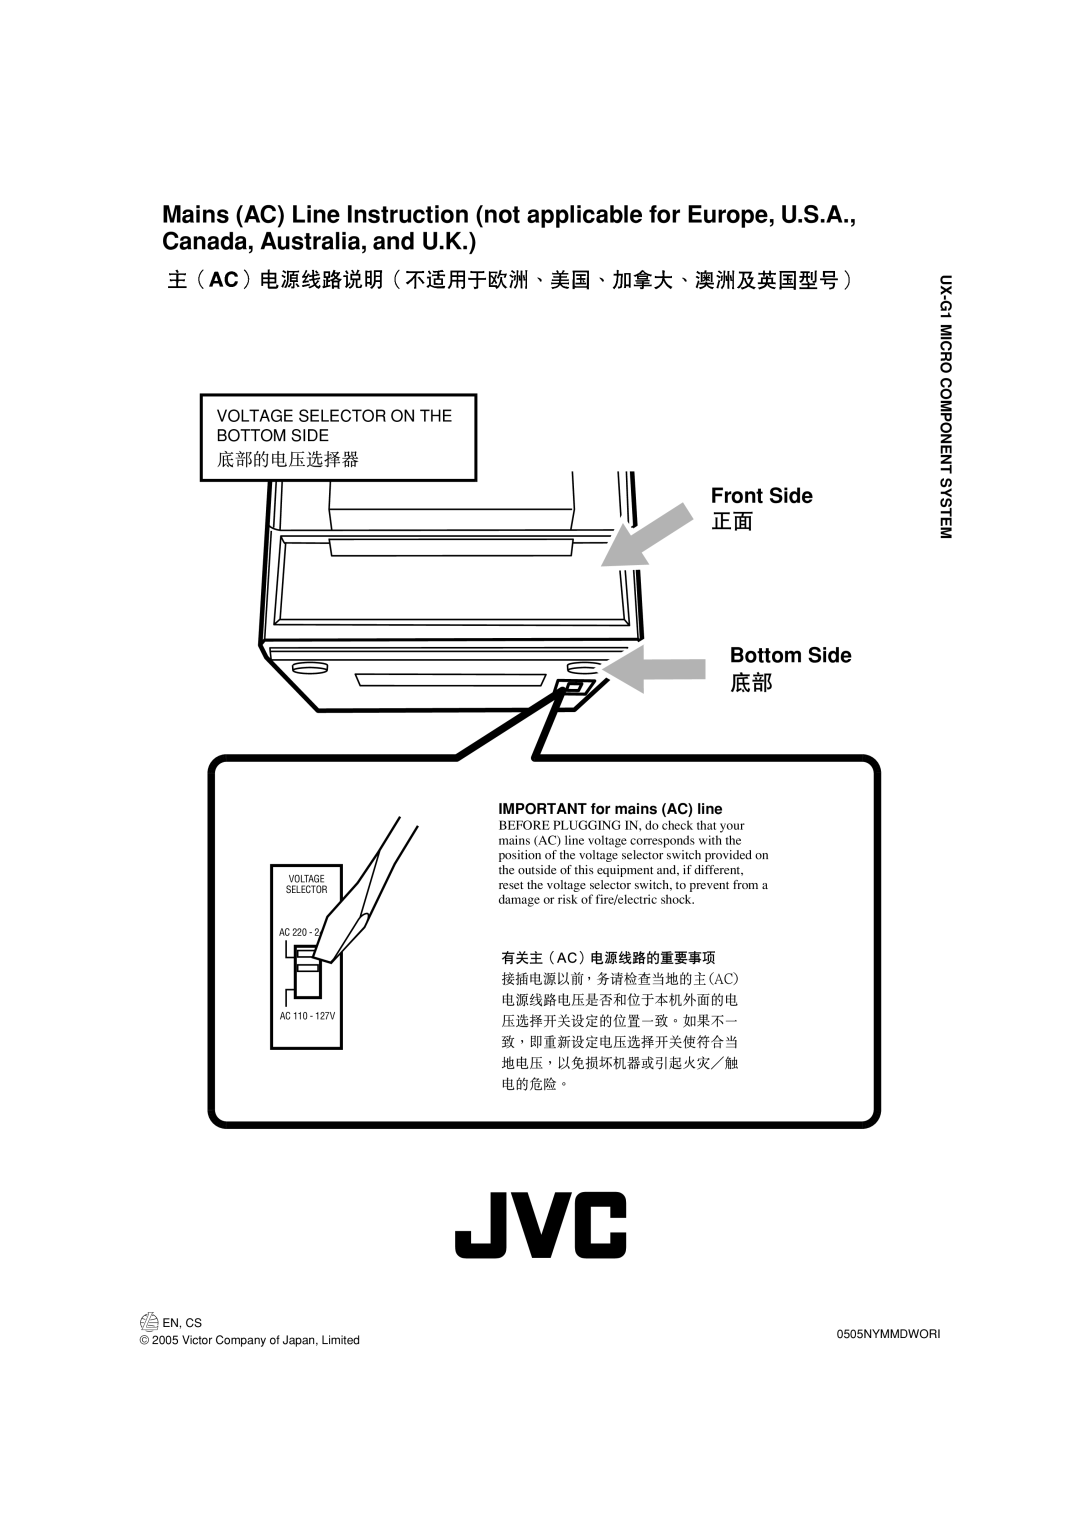 JVC LVT1356-005A manual Front Side Bottom Side, Voltage Selector On The Bottom Side, IMPORTANT for mains AC line, En, Cs 